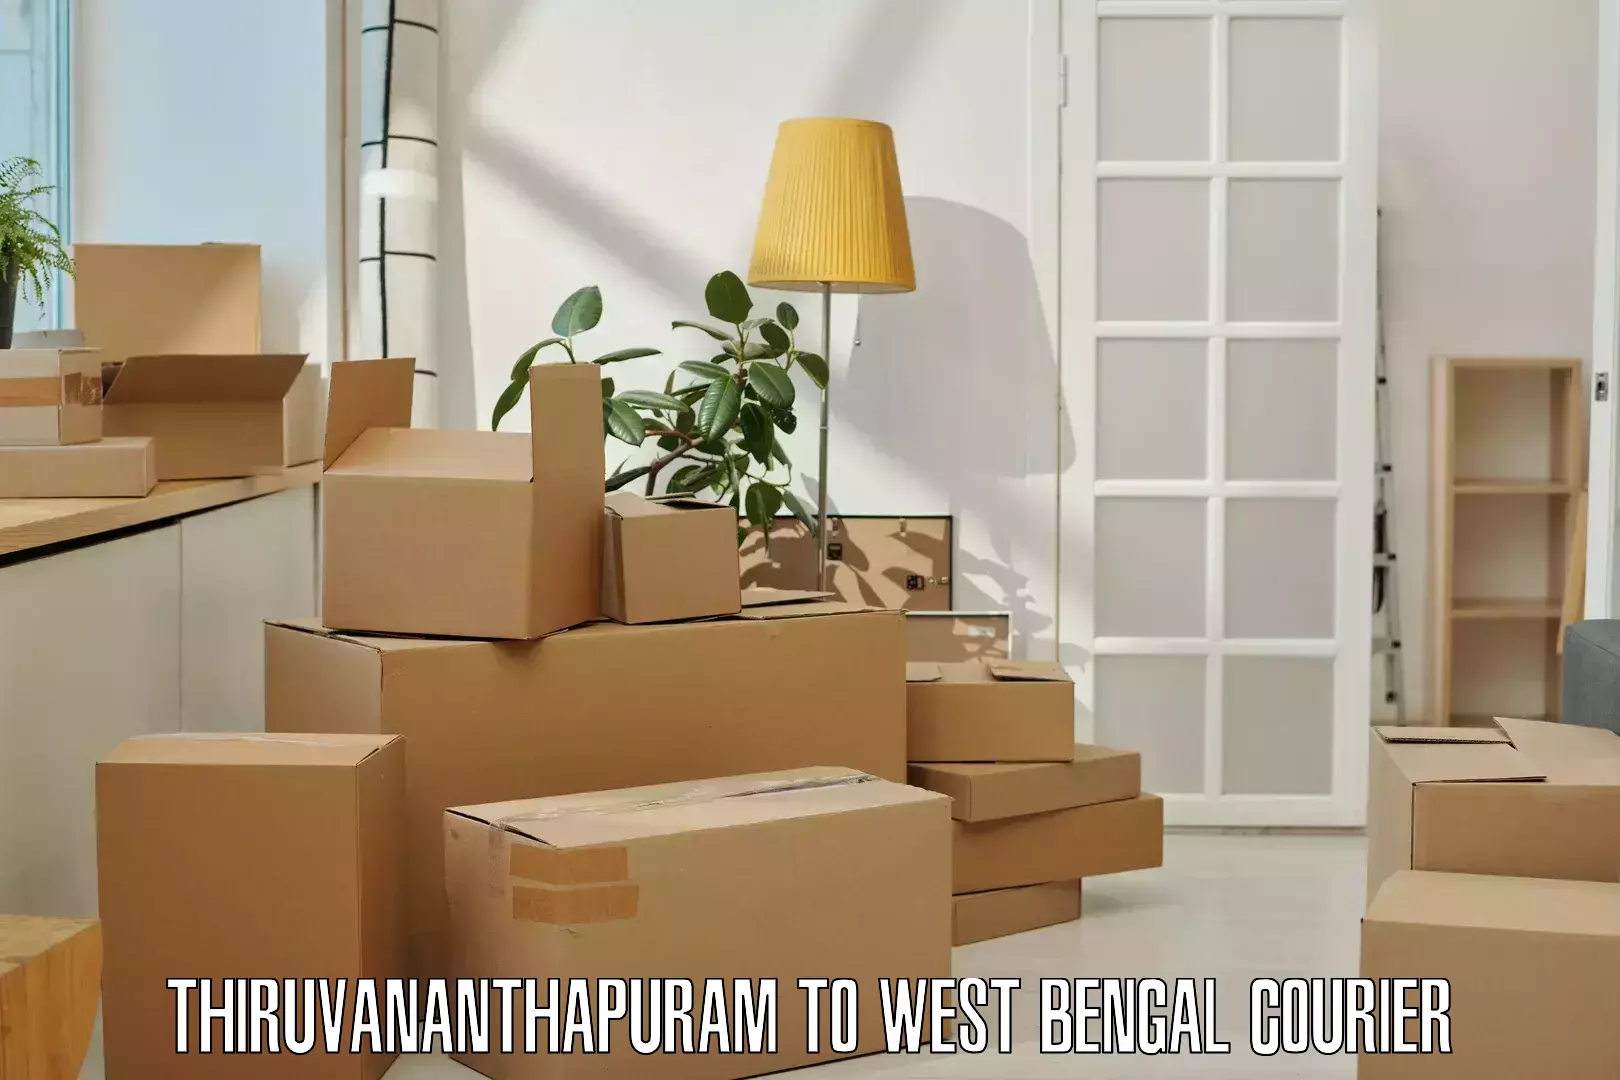 Subscription-based courier Thiruvananthapuram to Bhagabati